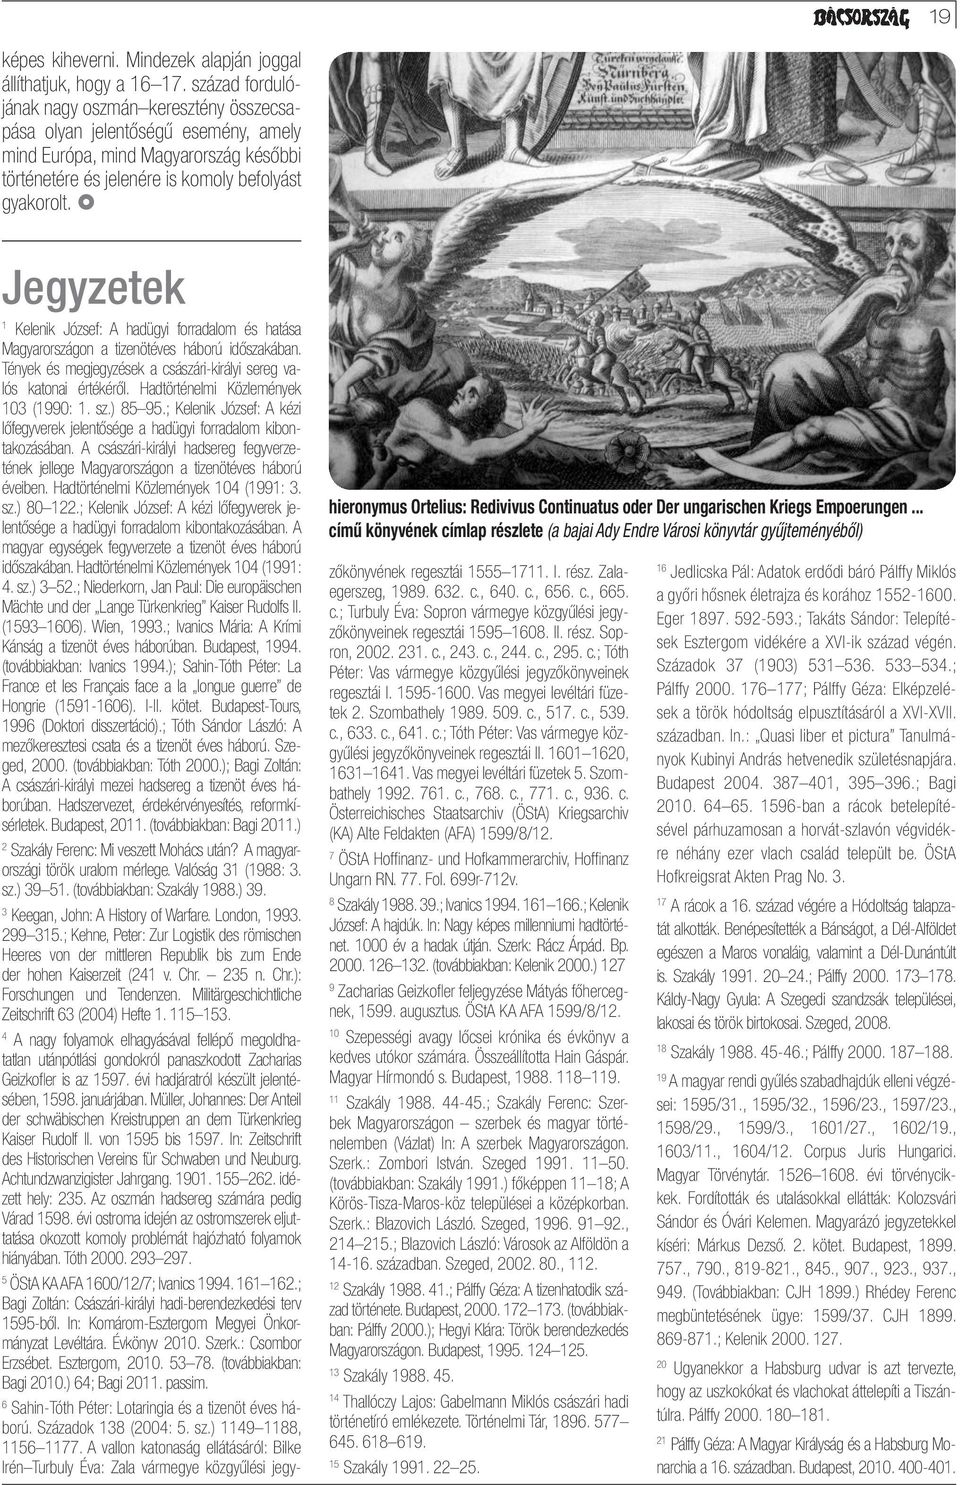 Jegyzetek hieronymus Ortelius: Redivivus Continuatus oder Der ungarischen Kriegs Empoerungen.